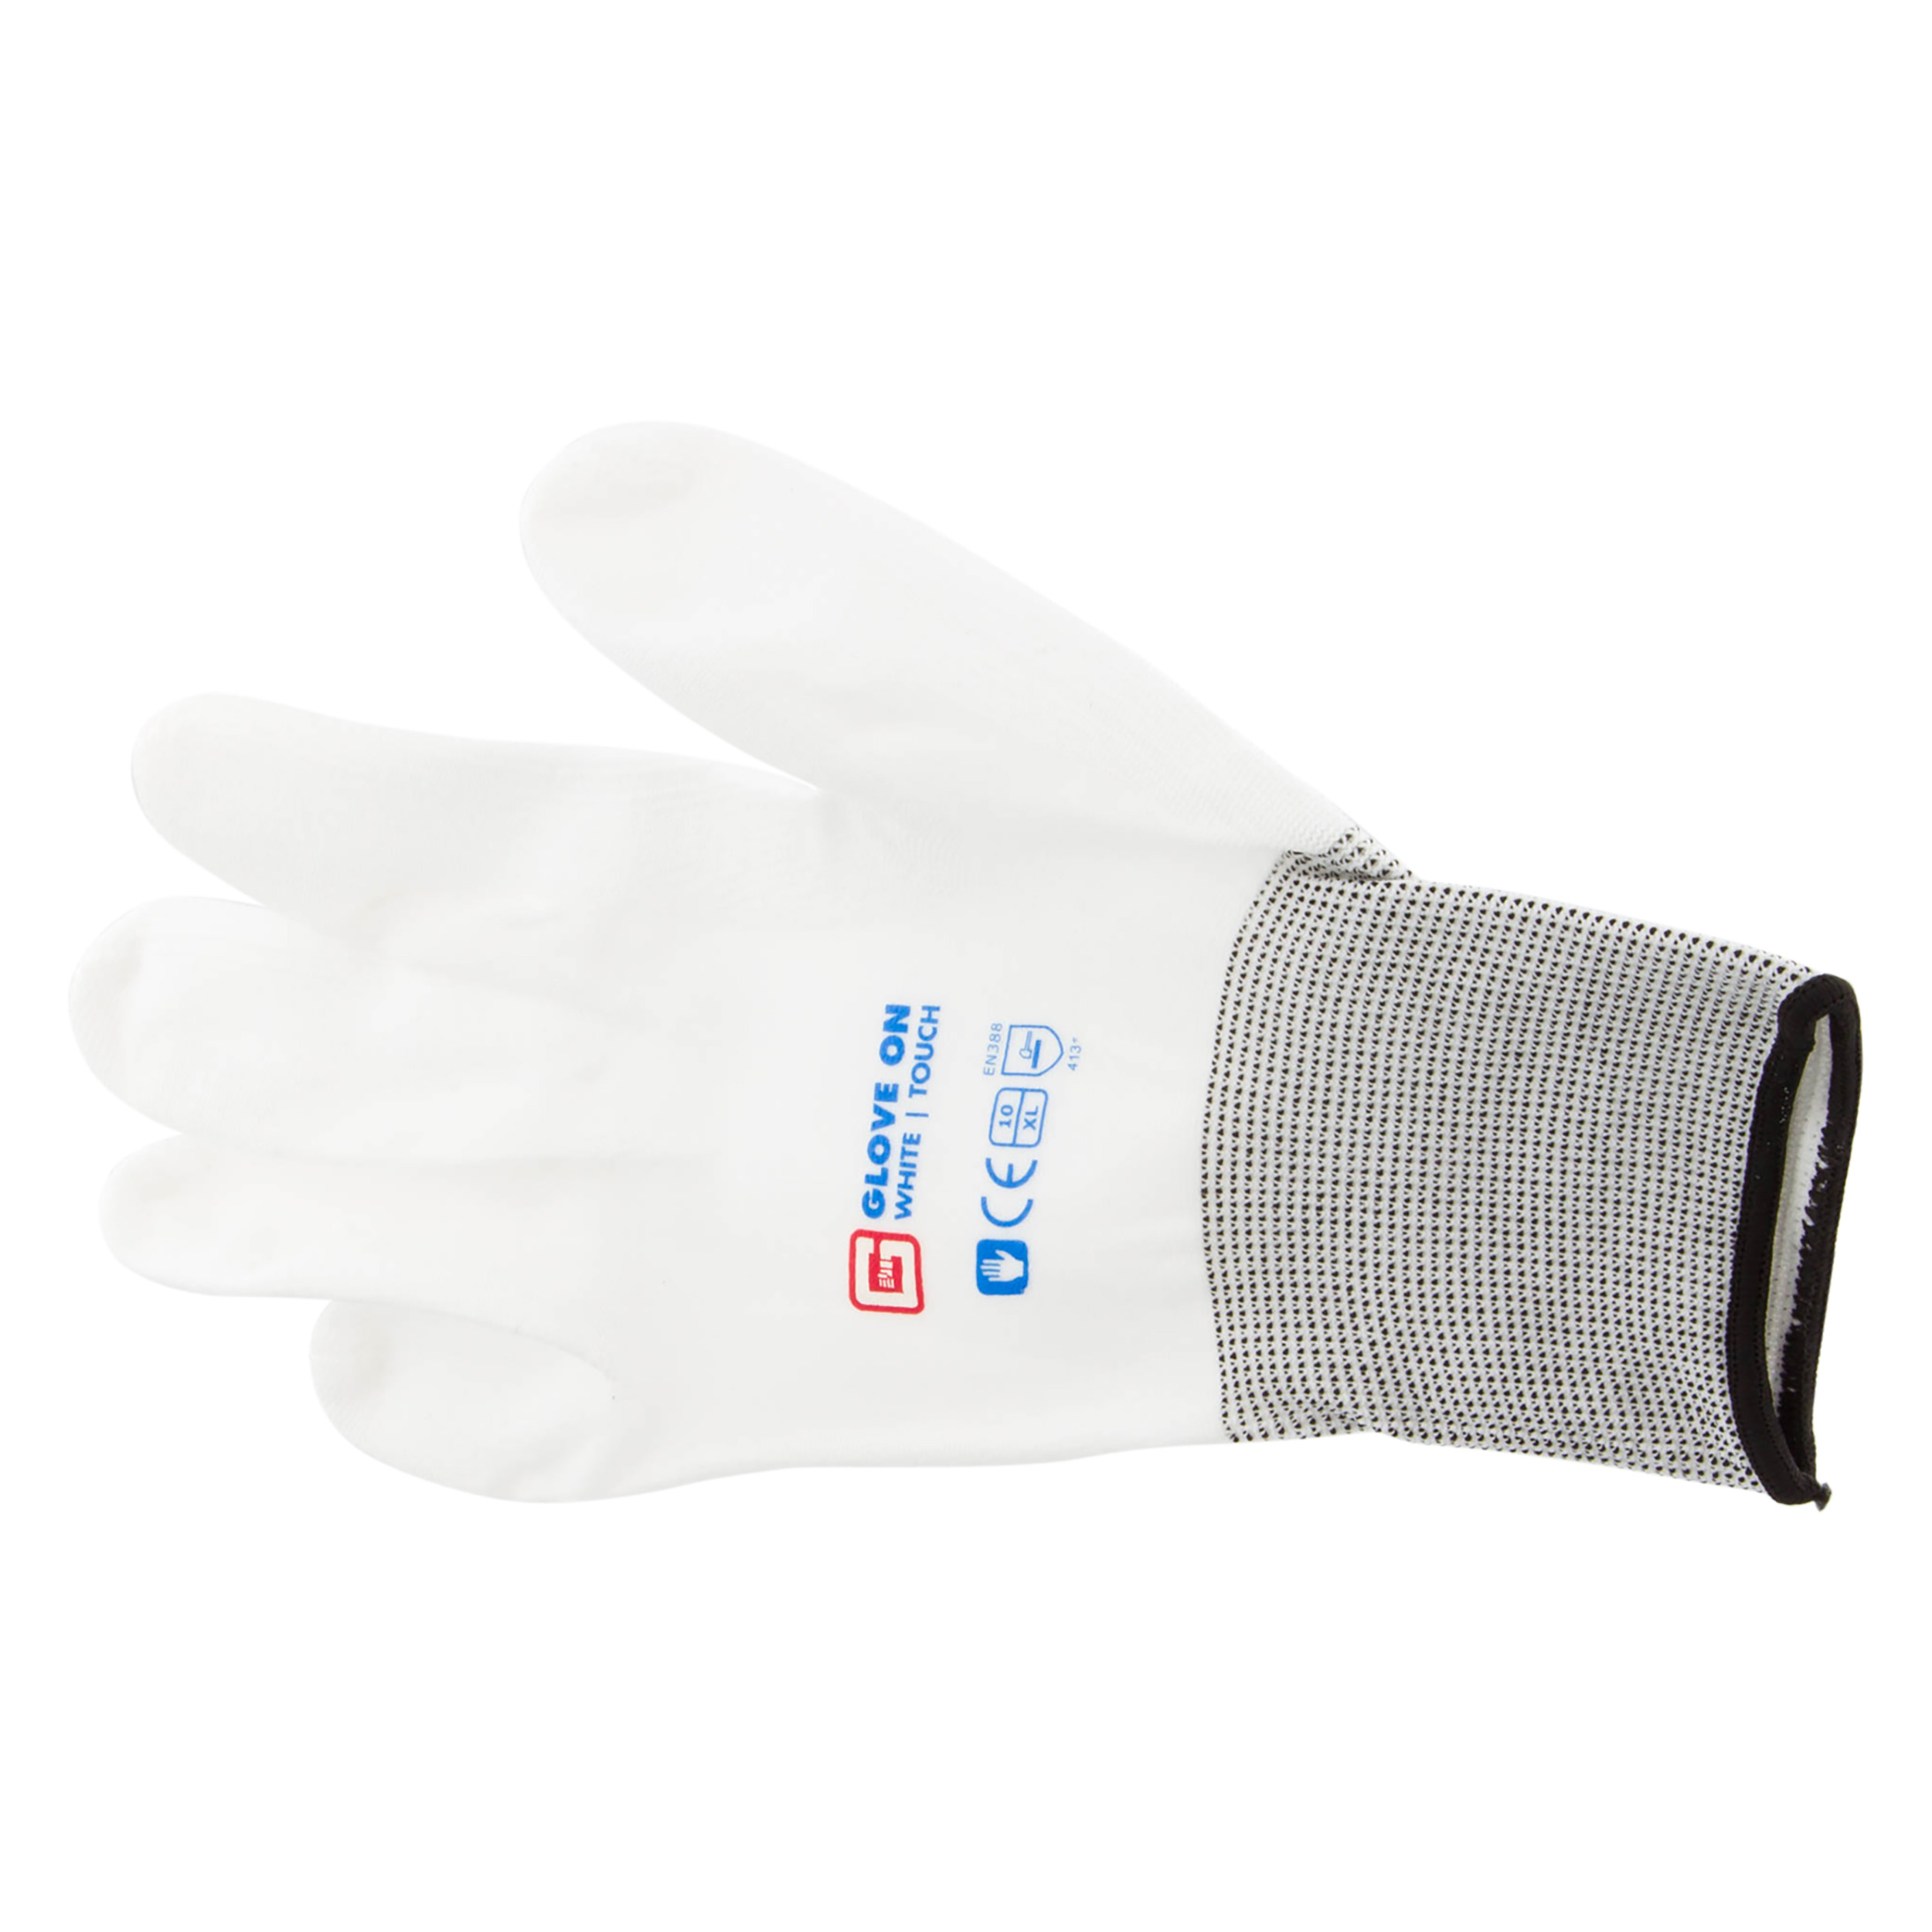 21.080.26 Glove On Touch werkhandschoen touch white - XL